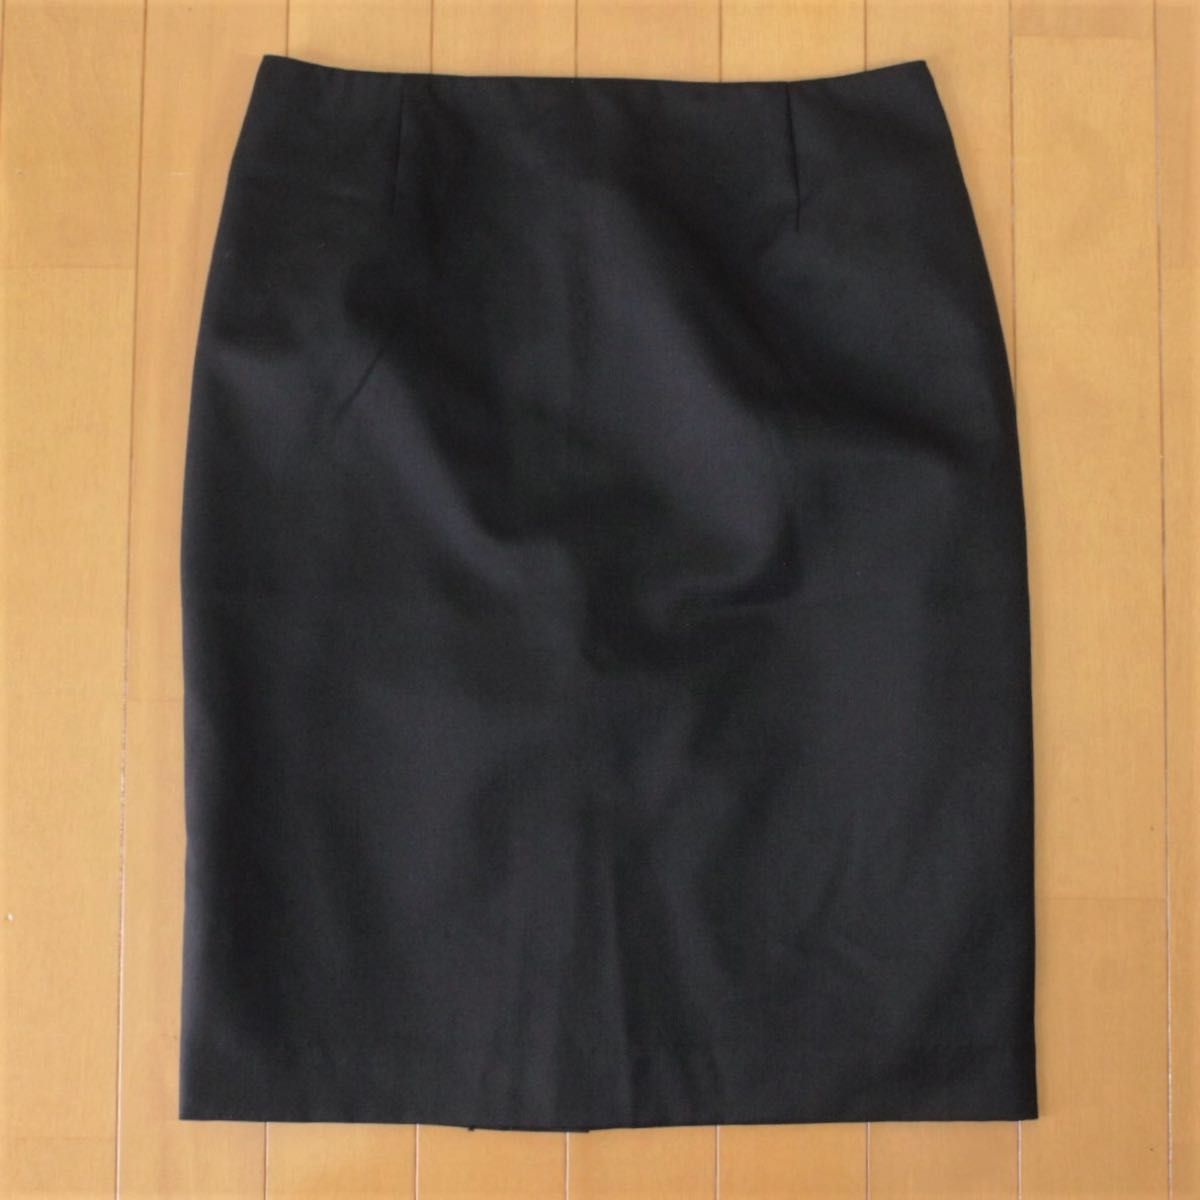 01【新品同様】レミュー ファム スカートスーツ S 黒 7号 ウォッシャブル-